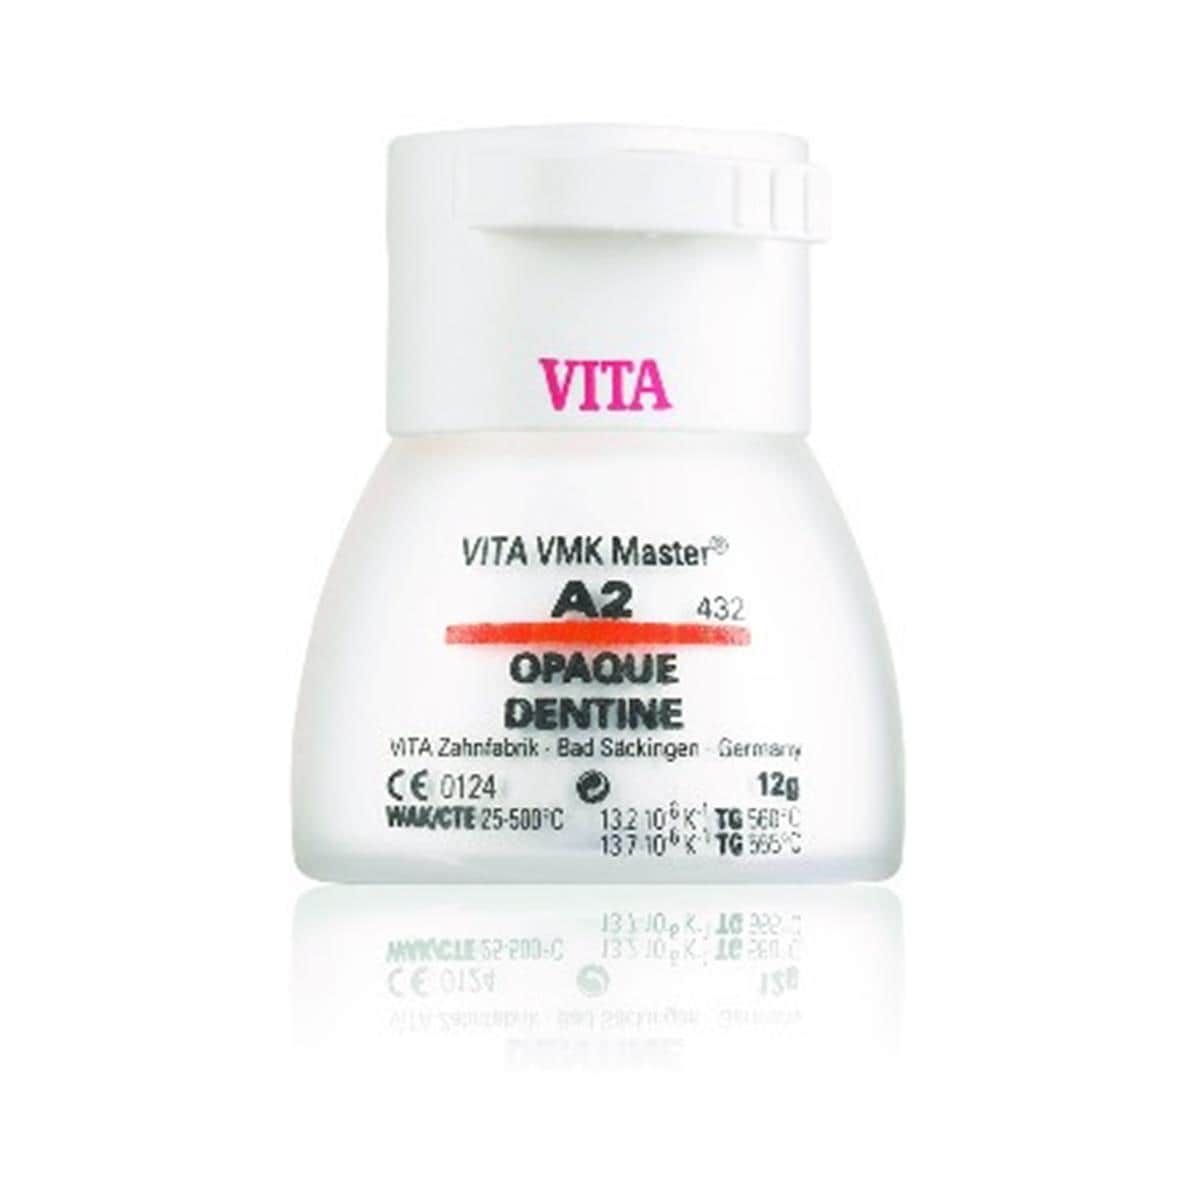 VMK Master VITA - Dentine Opaque - D4 - Le flacon de 12 g